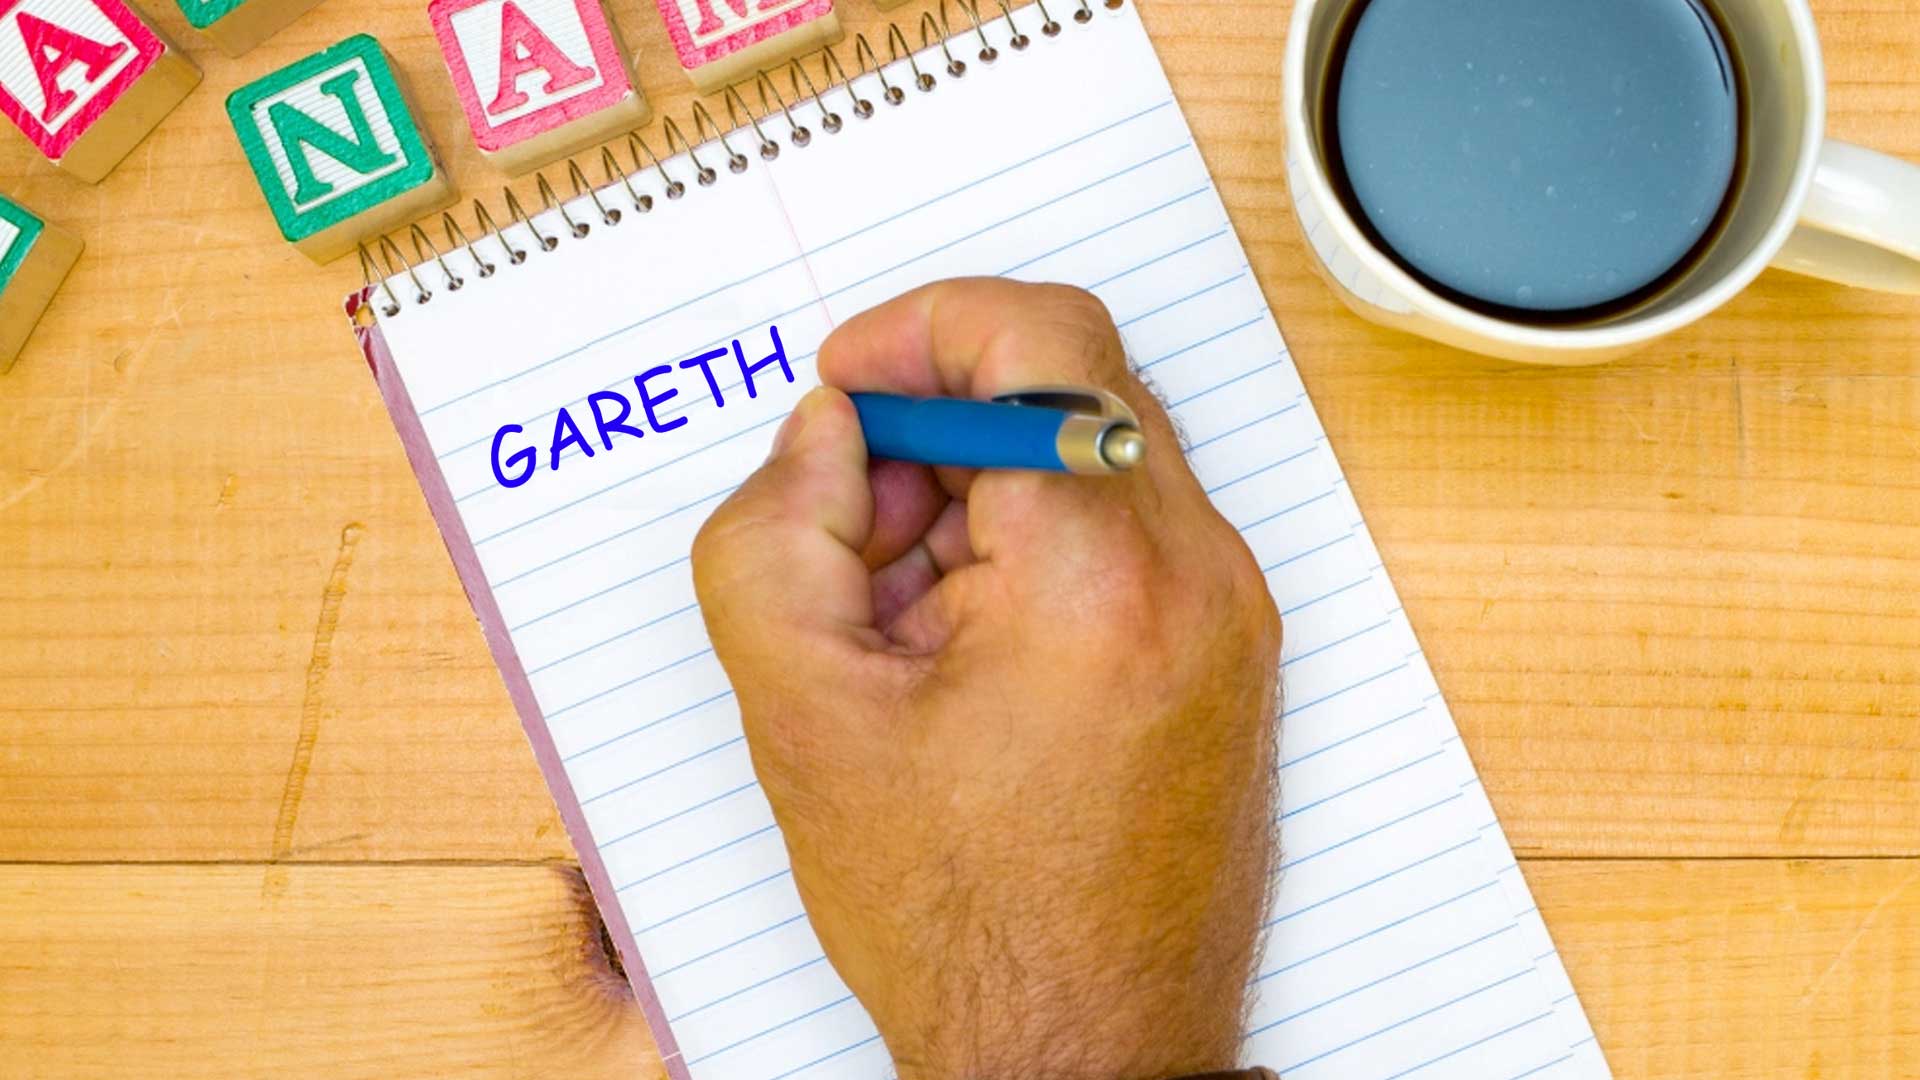 A man writing down the name Gareth